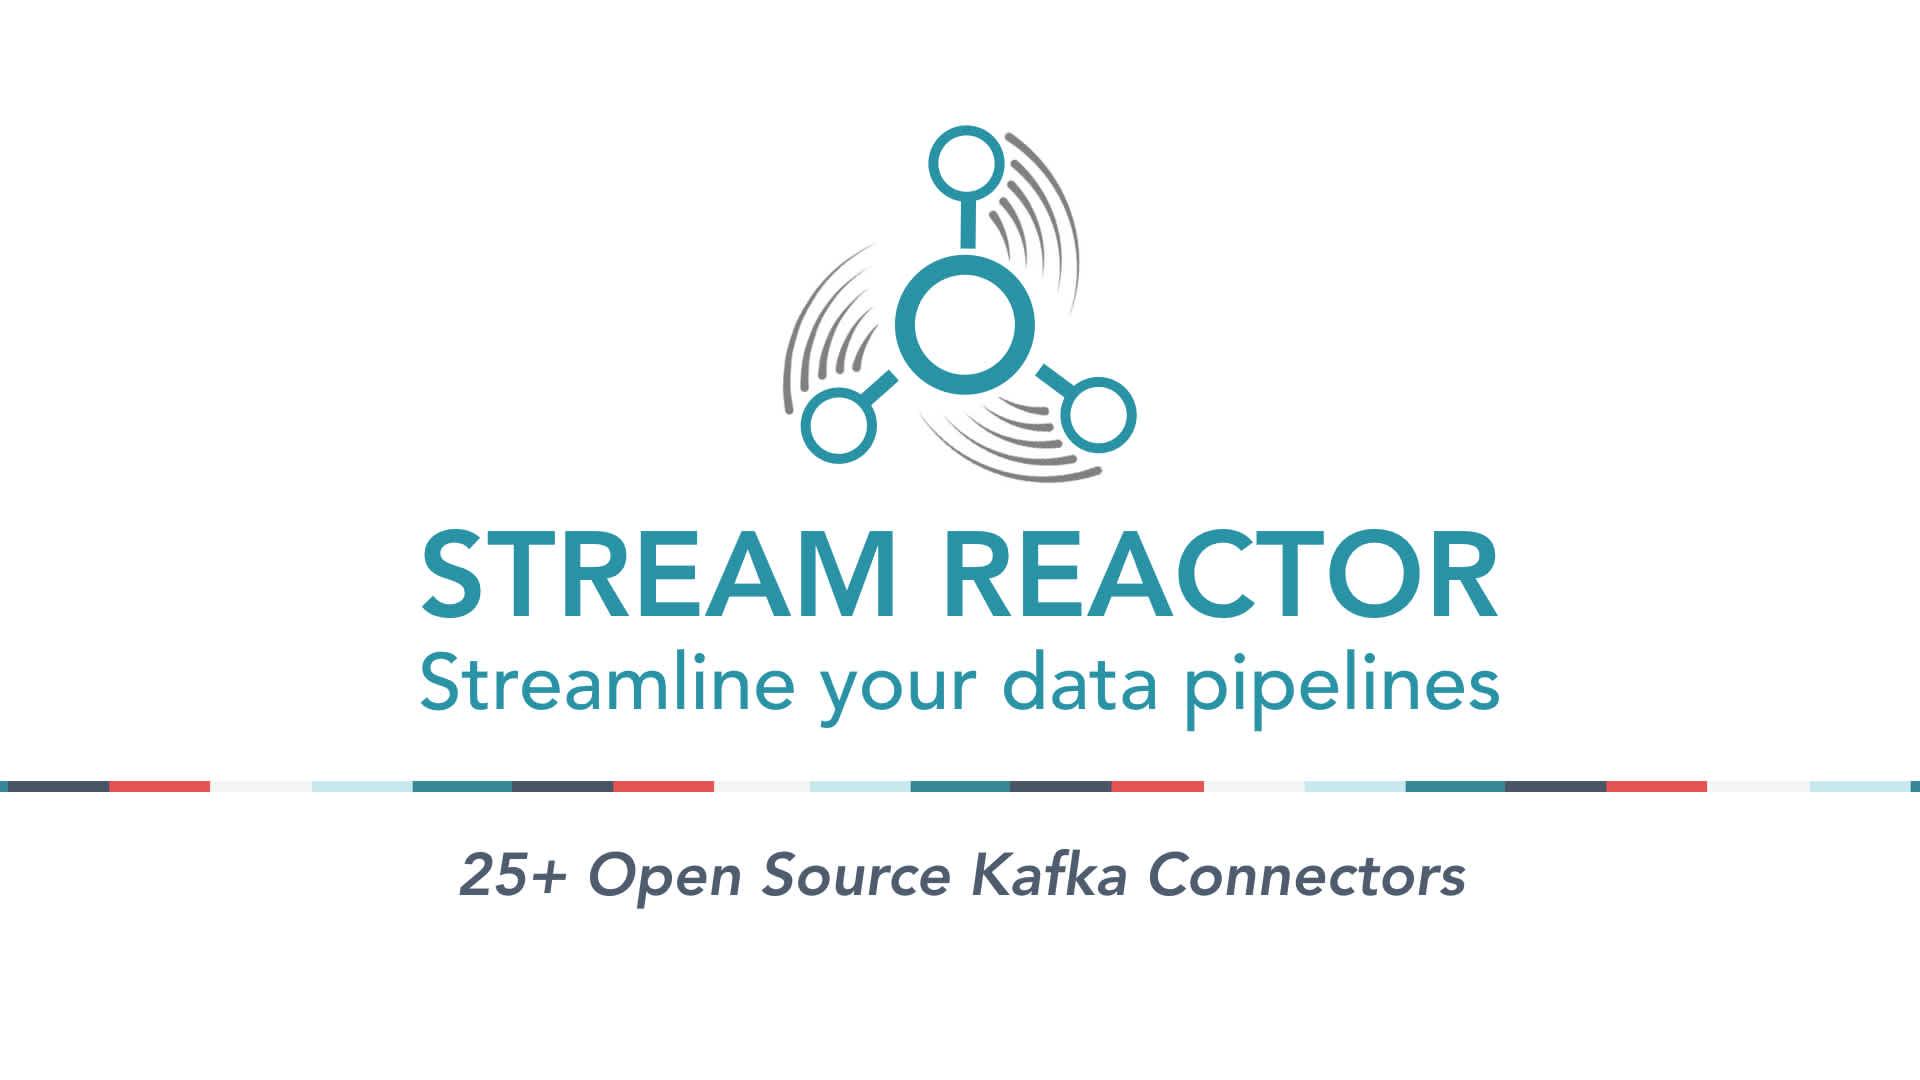 Stream Reactor released for Kafka 2.1.0